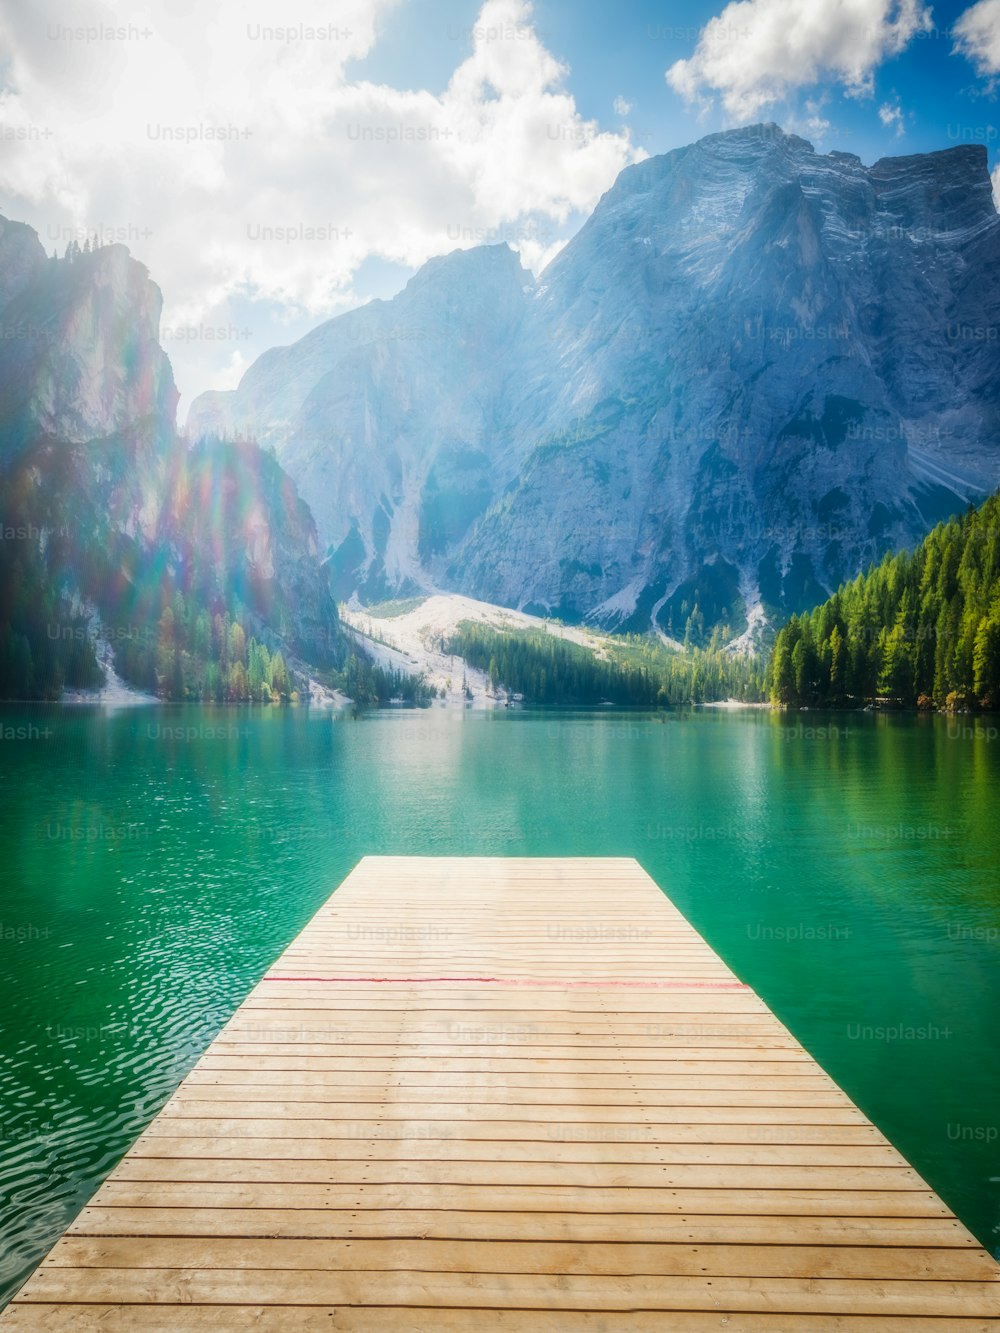 Lago Braies nas montanhas Dolomitas Seekofel no fundo, Sudtirol, Itália. O Lago Braies também é conhecido como Lago di Braies. O lago é cercado pelas montanhas que se refletem na água.